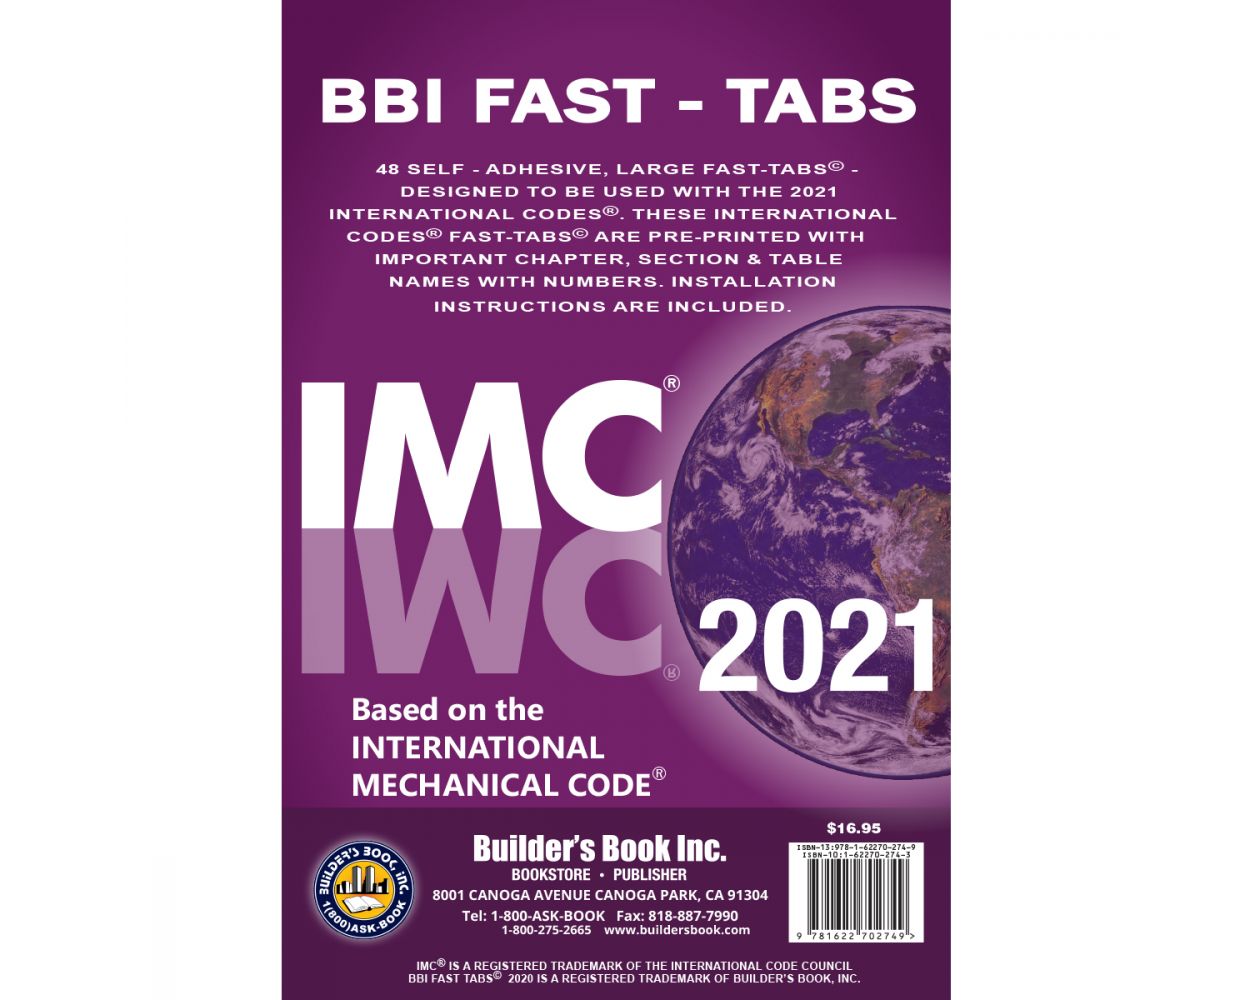 2021 International Mechanical Code® (IMC) FastTabs